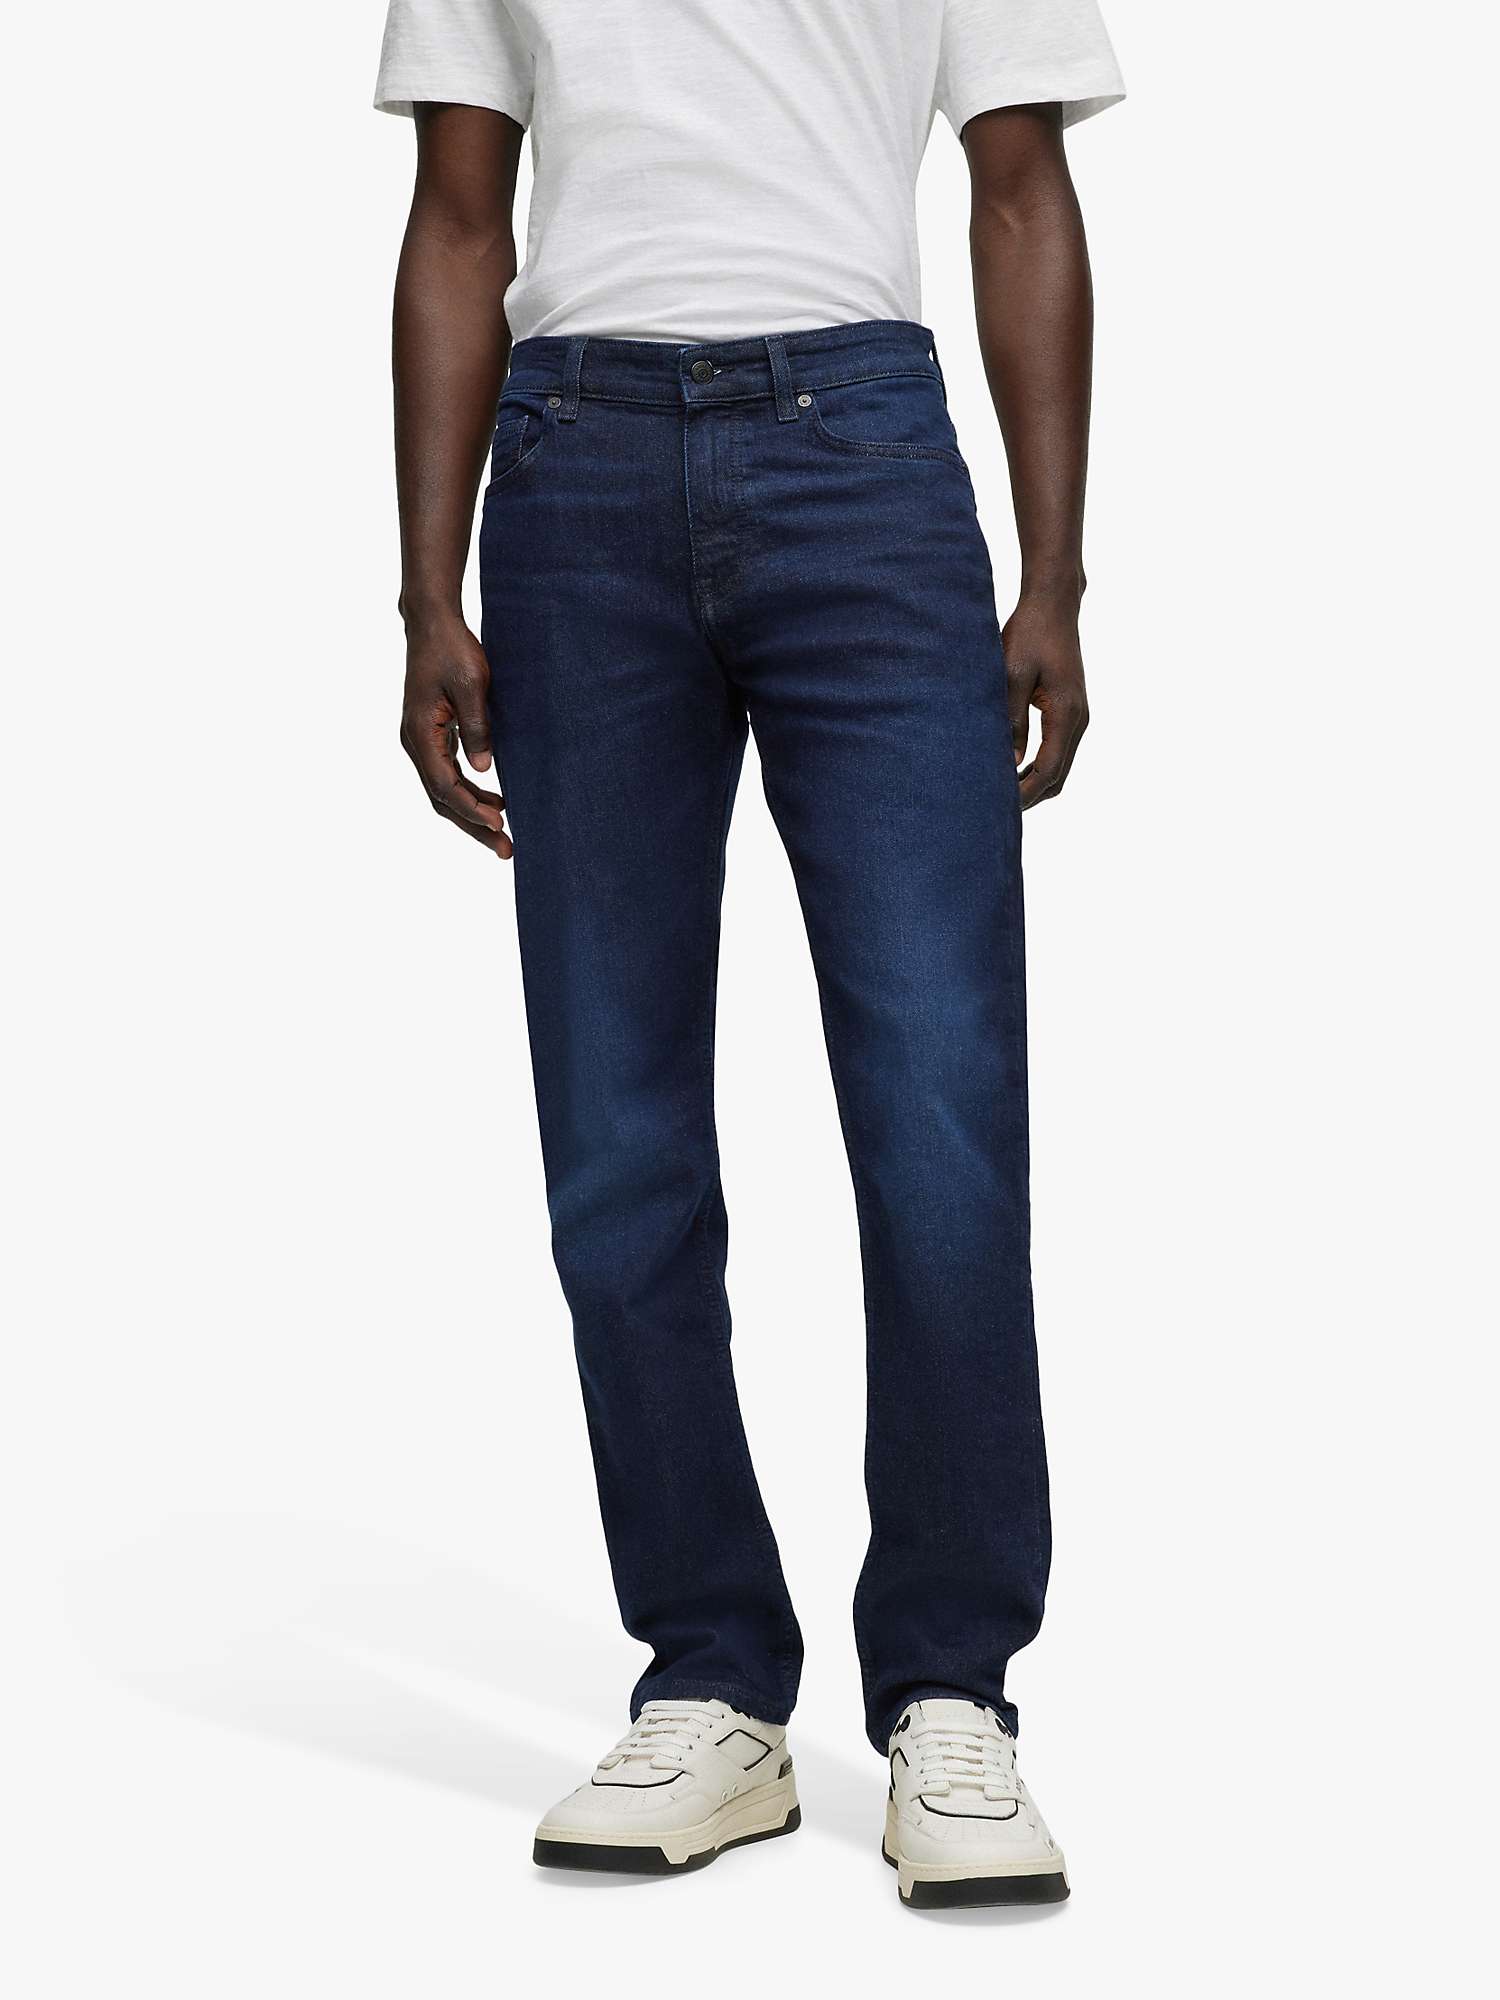 Buy HUGO BOSS Delaware Jeans Online at johnlewis.com